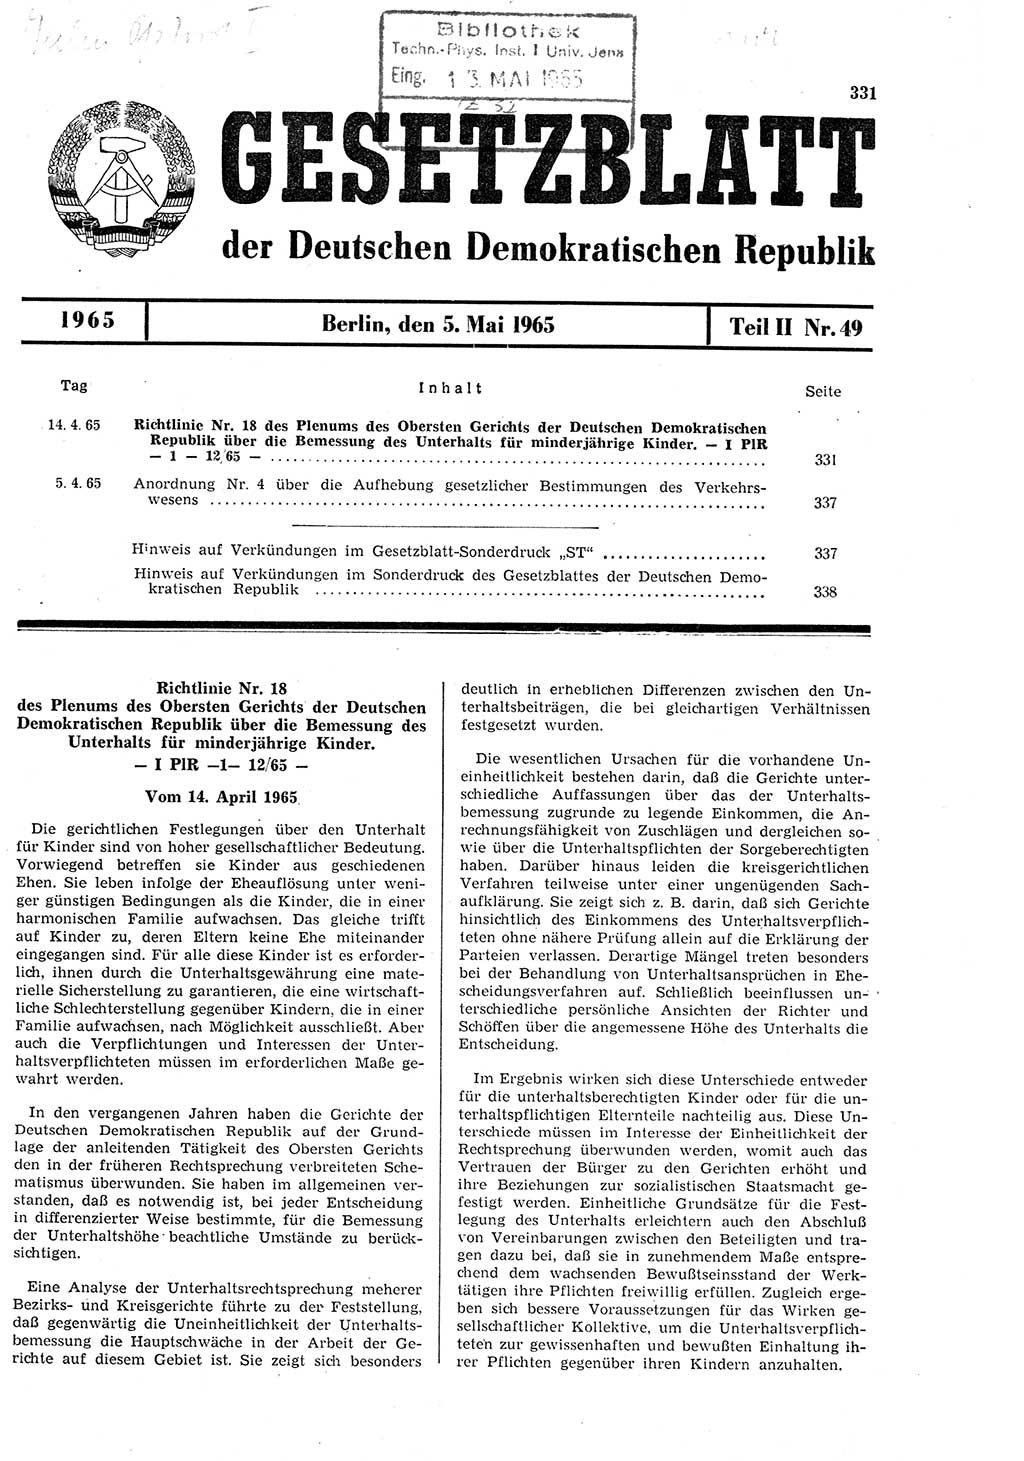 Gesetzblatt (GBl.) der Deutschen Demokratischen Republik (DDR) Teil ⅠⅠ 1965, Seite 331 (GBl. DDR ⅠⅠ 1965, S. 331)